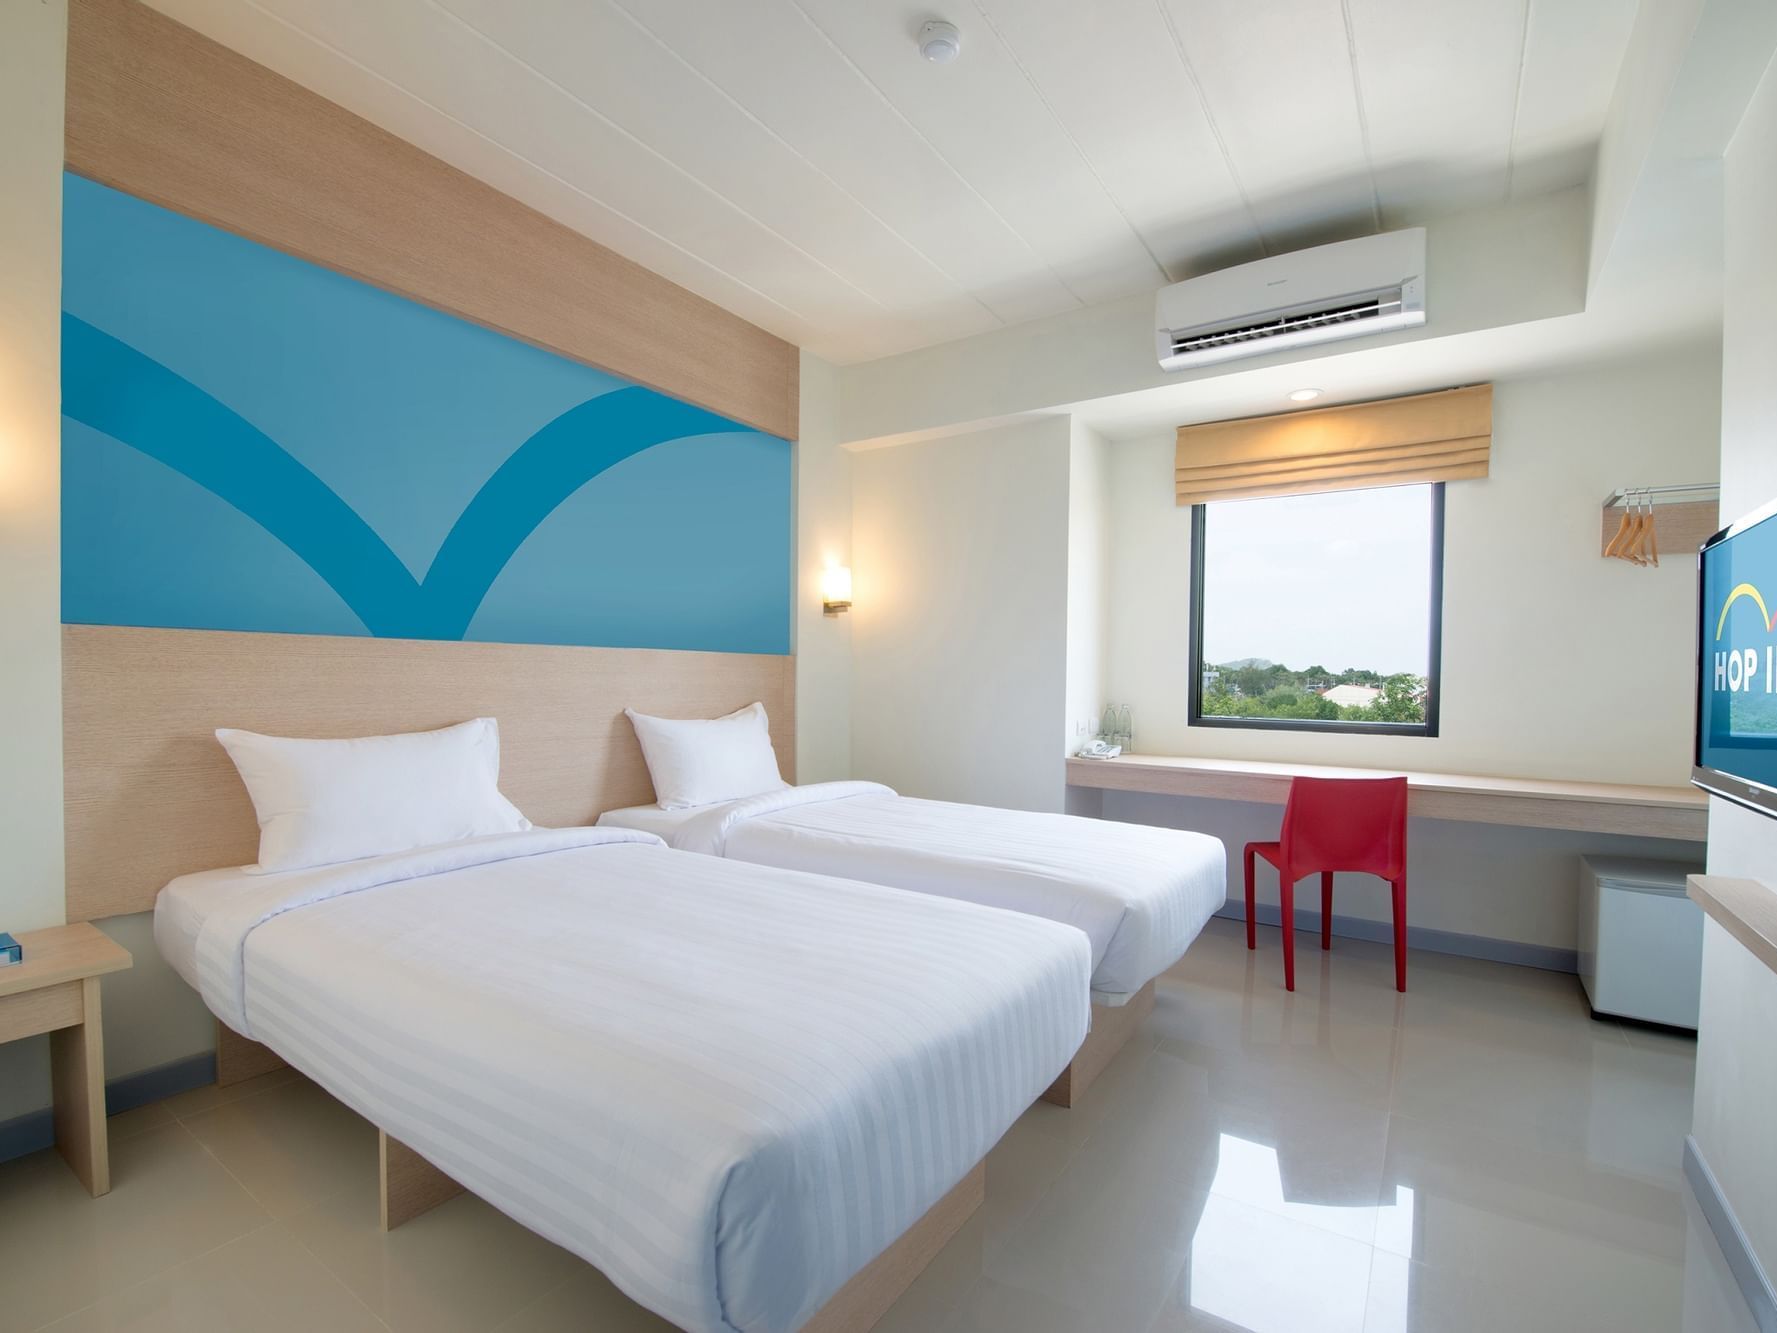 จองห้องมาตรฐาน เตียงคู่ของโรงแรมฮ็อป อินน์ ประเทศไทย